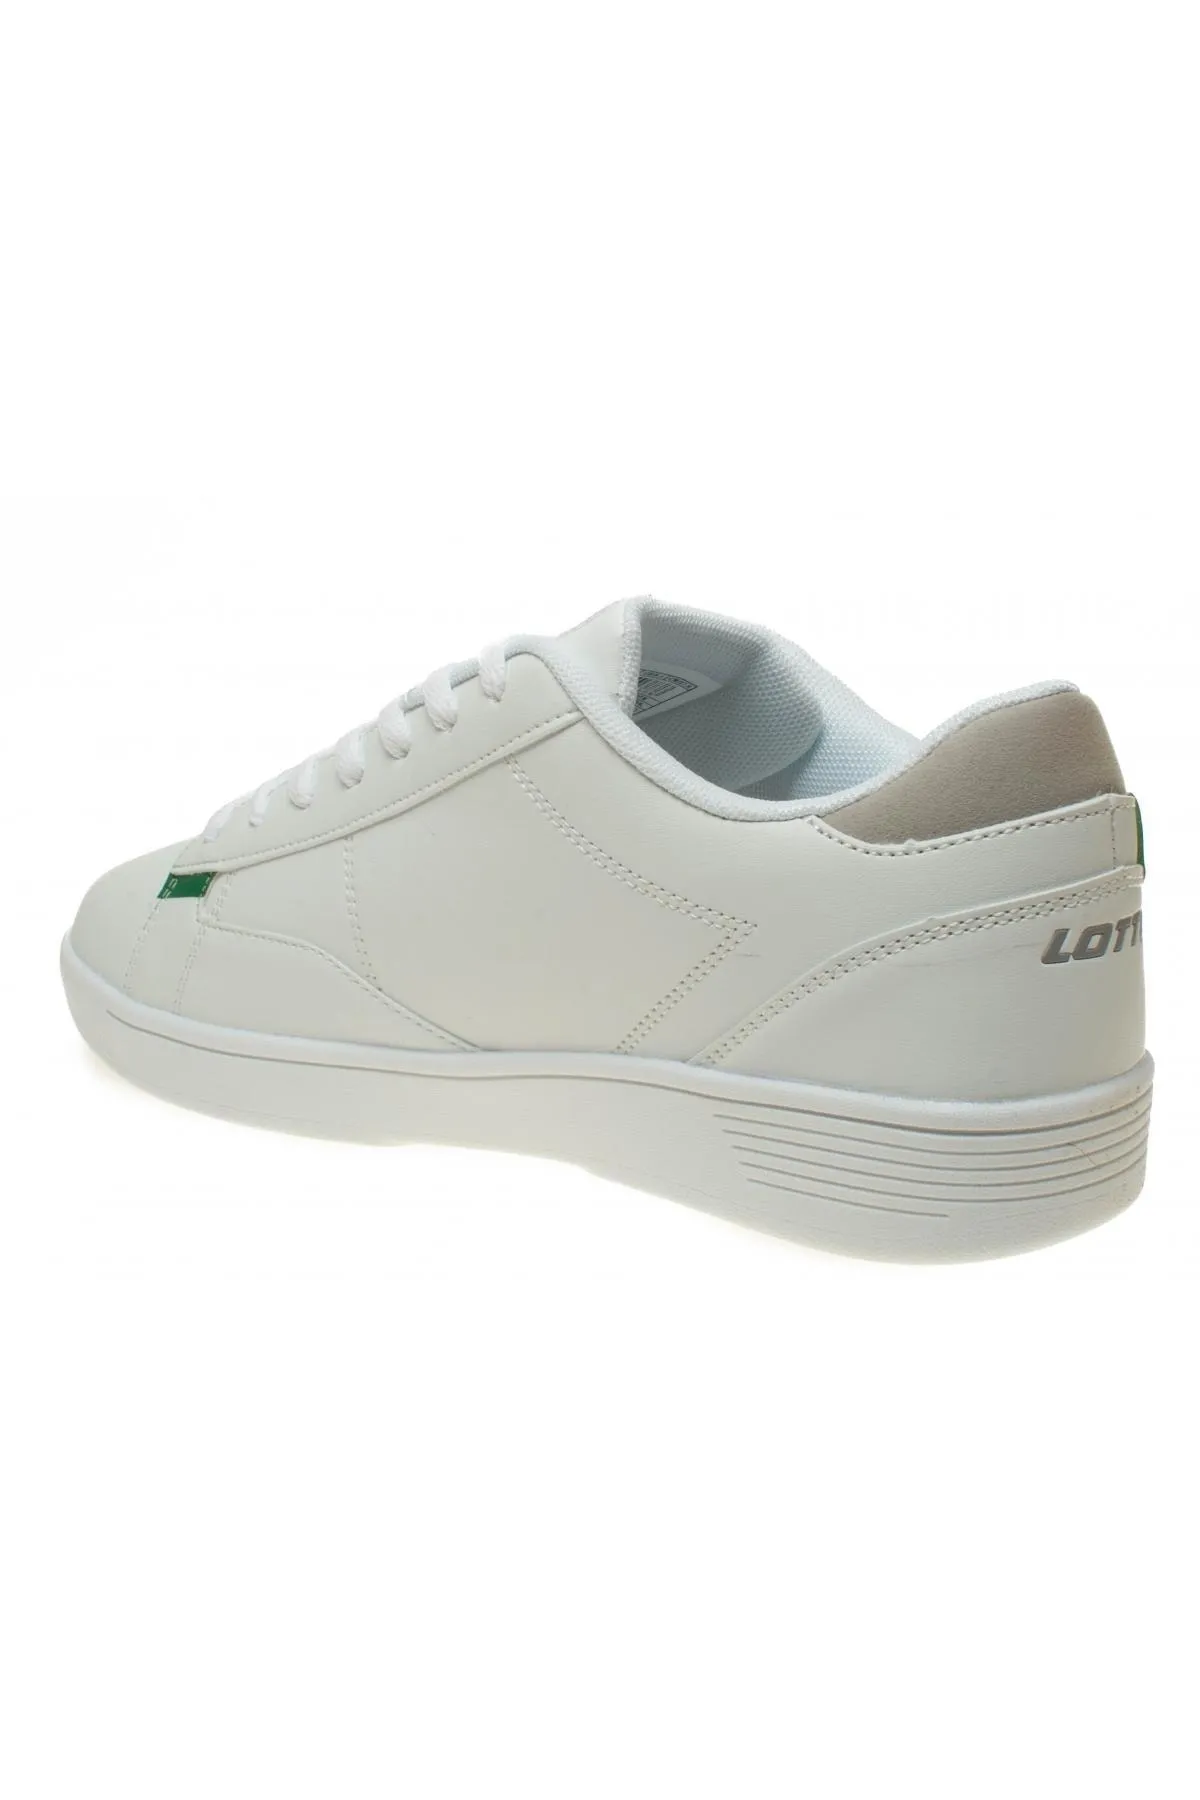 Loda-M 3Fx Günlük Erkek Spor Ayakkabı-Beyaz - Thumbnail